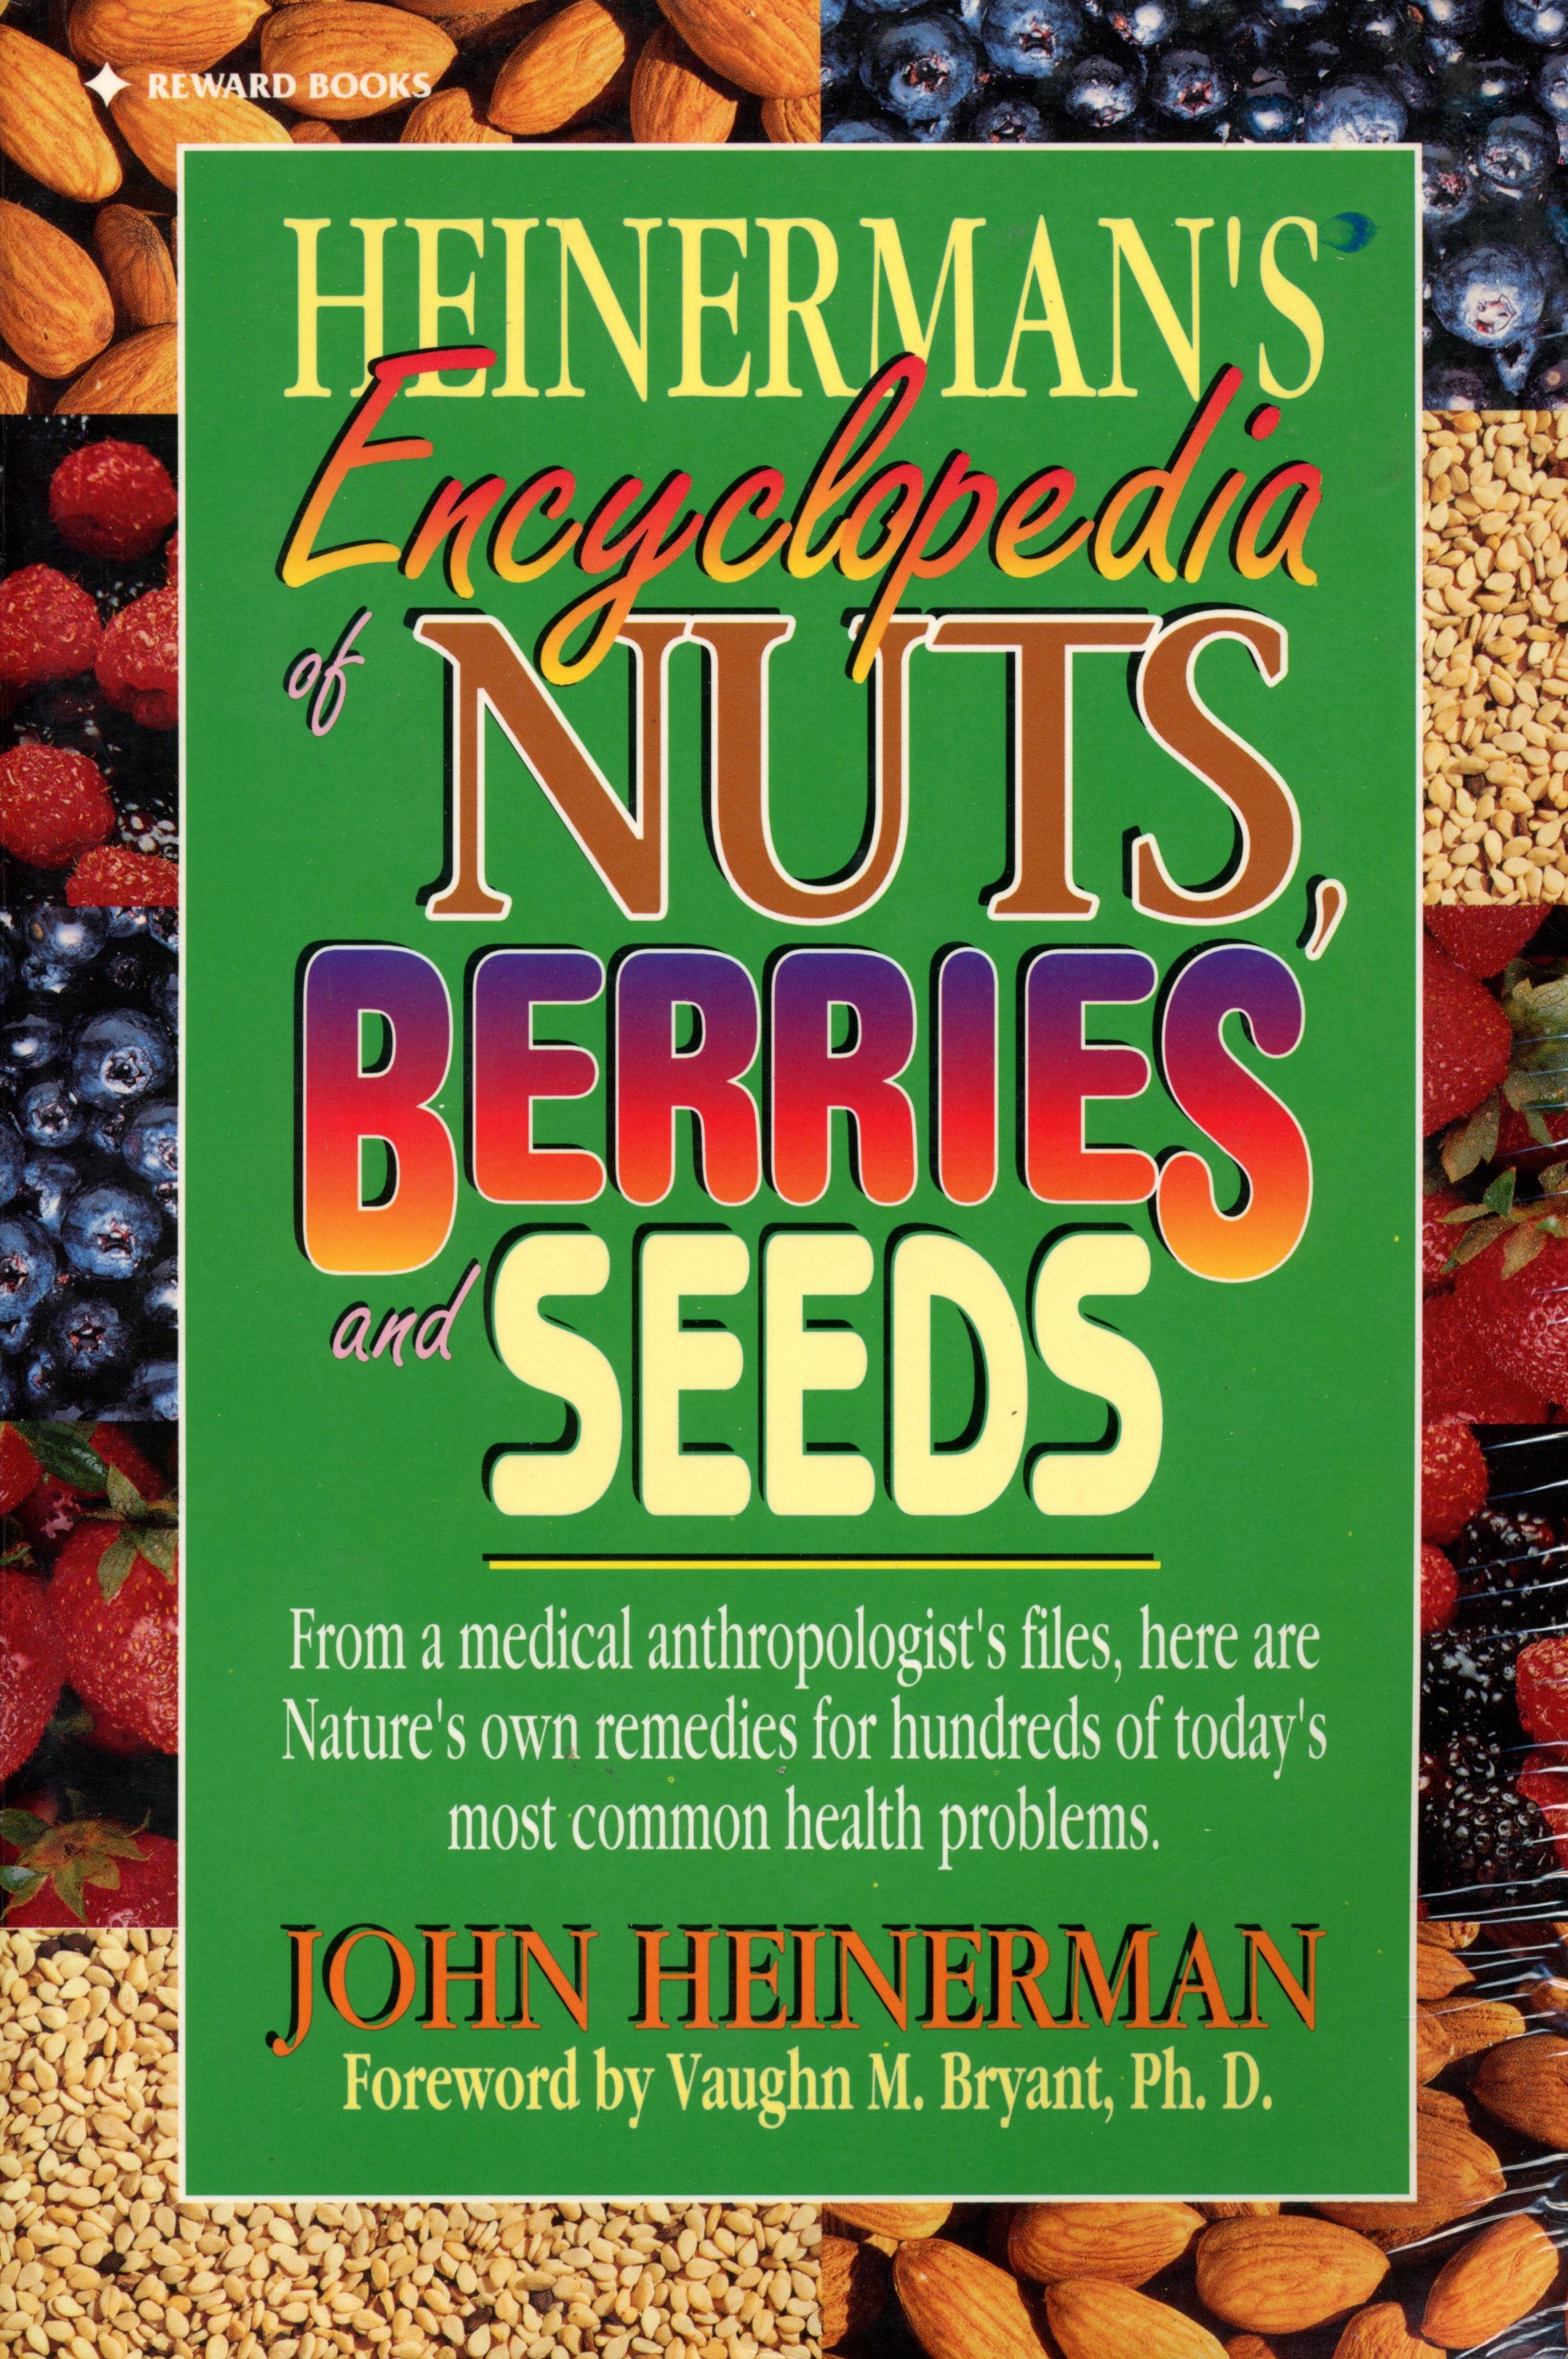 Heinerman's Encyclopedia of Nuts, Berries, and Seeds - John Heinerman - 1995 - Paperback - Reward Books